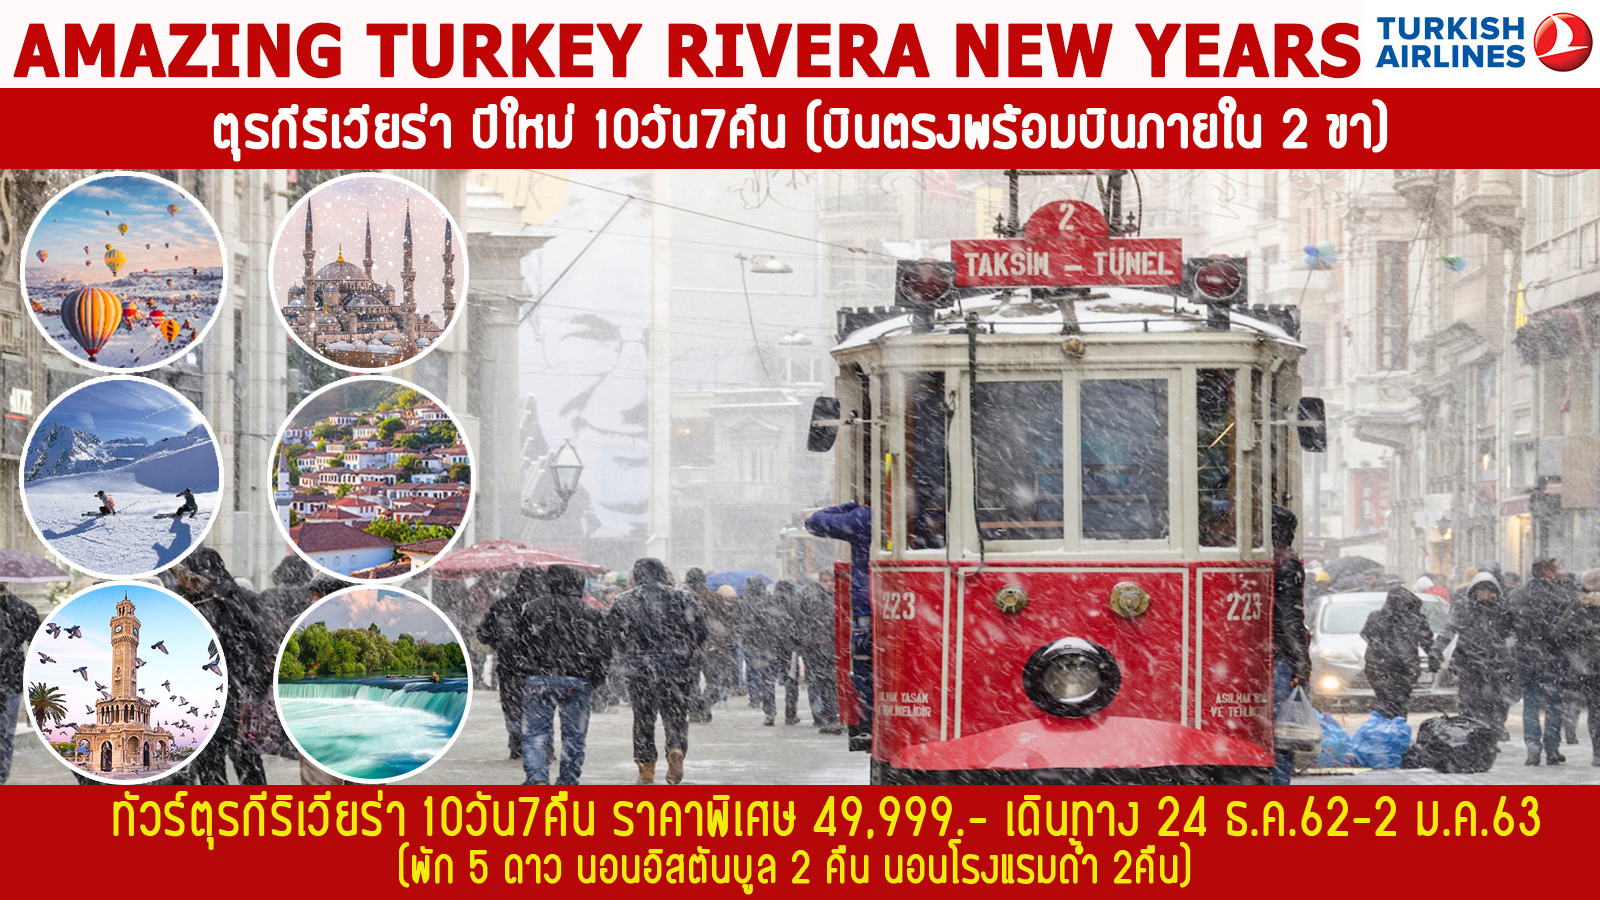  ปีใหม่  ทัวร์ตุรกี AMAZING TURKEY RIVERA 10วัน 7คืน (24DEC19-2JAN20)(TK)